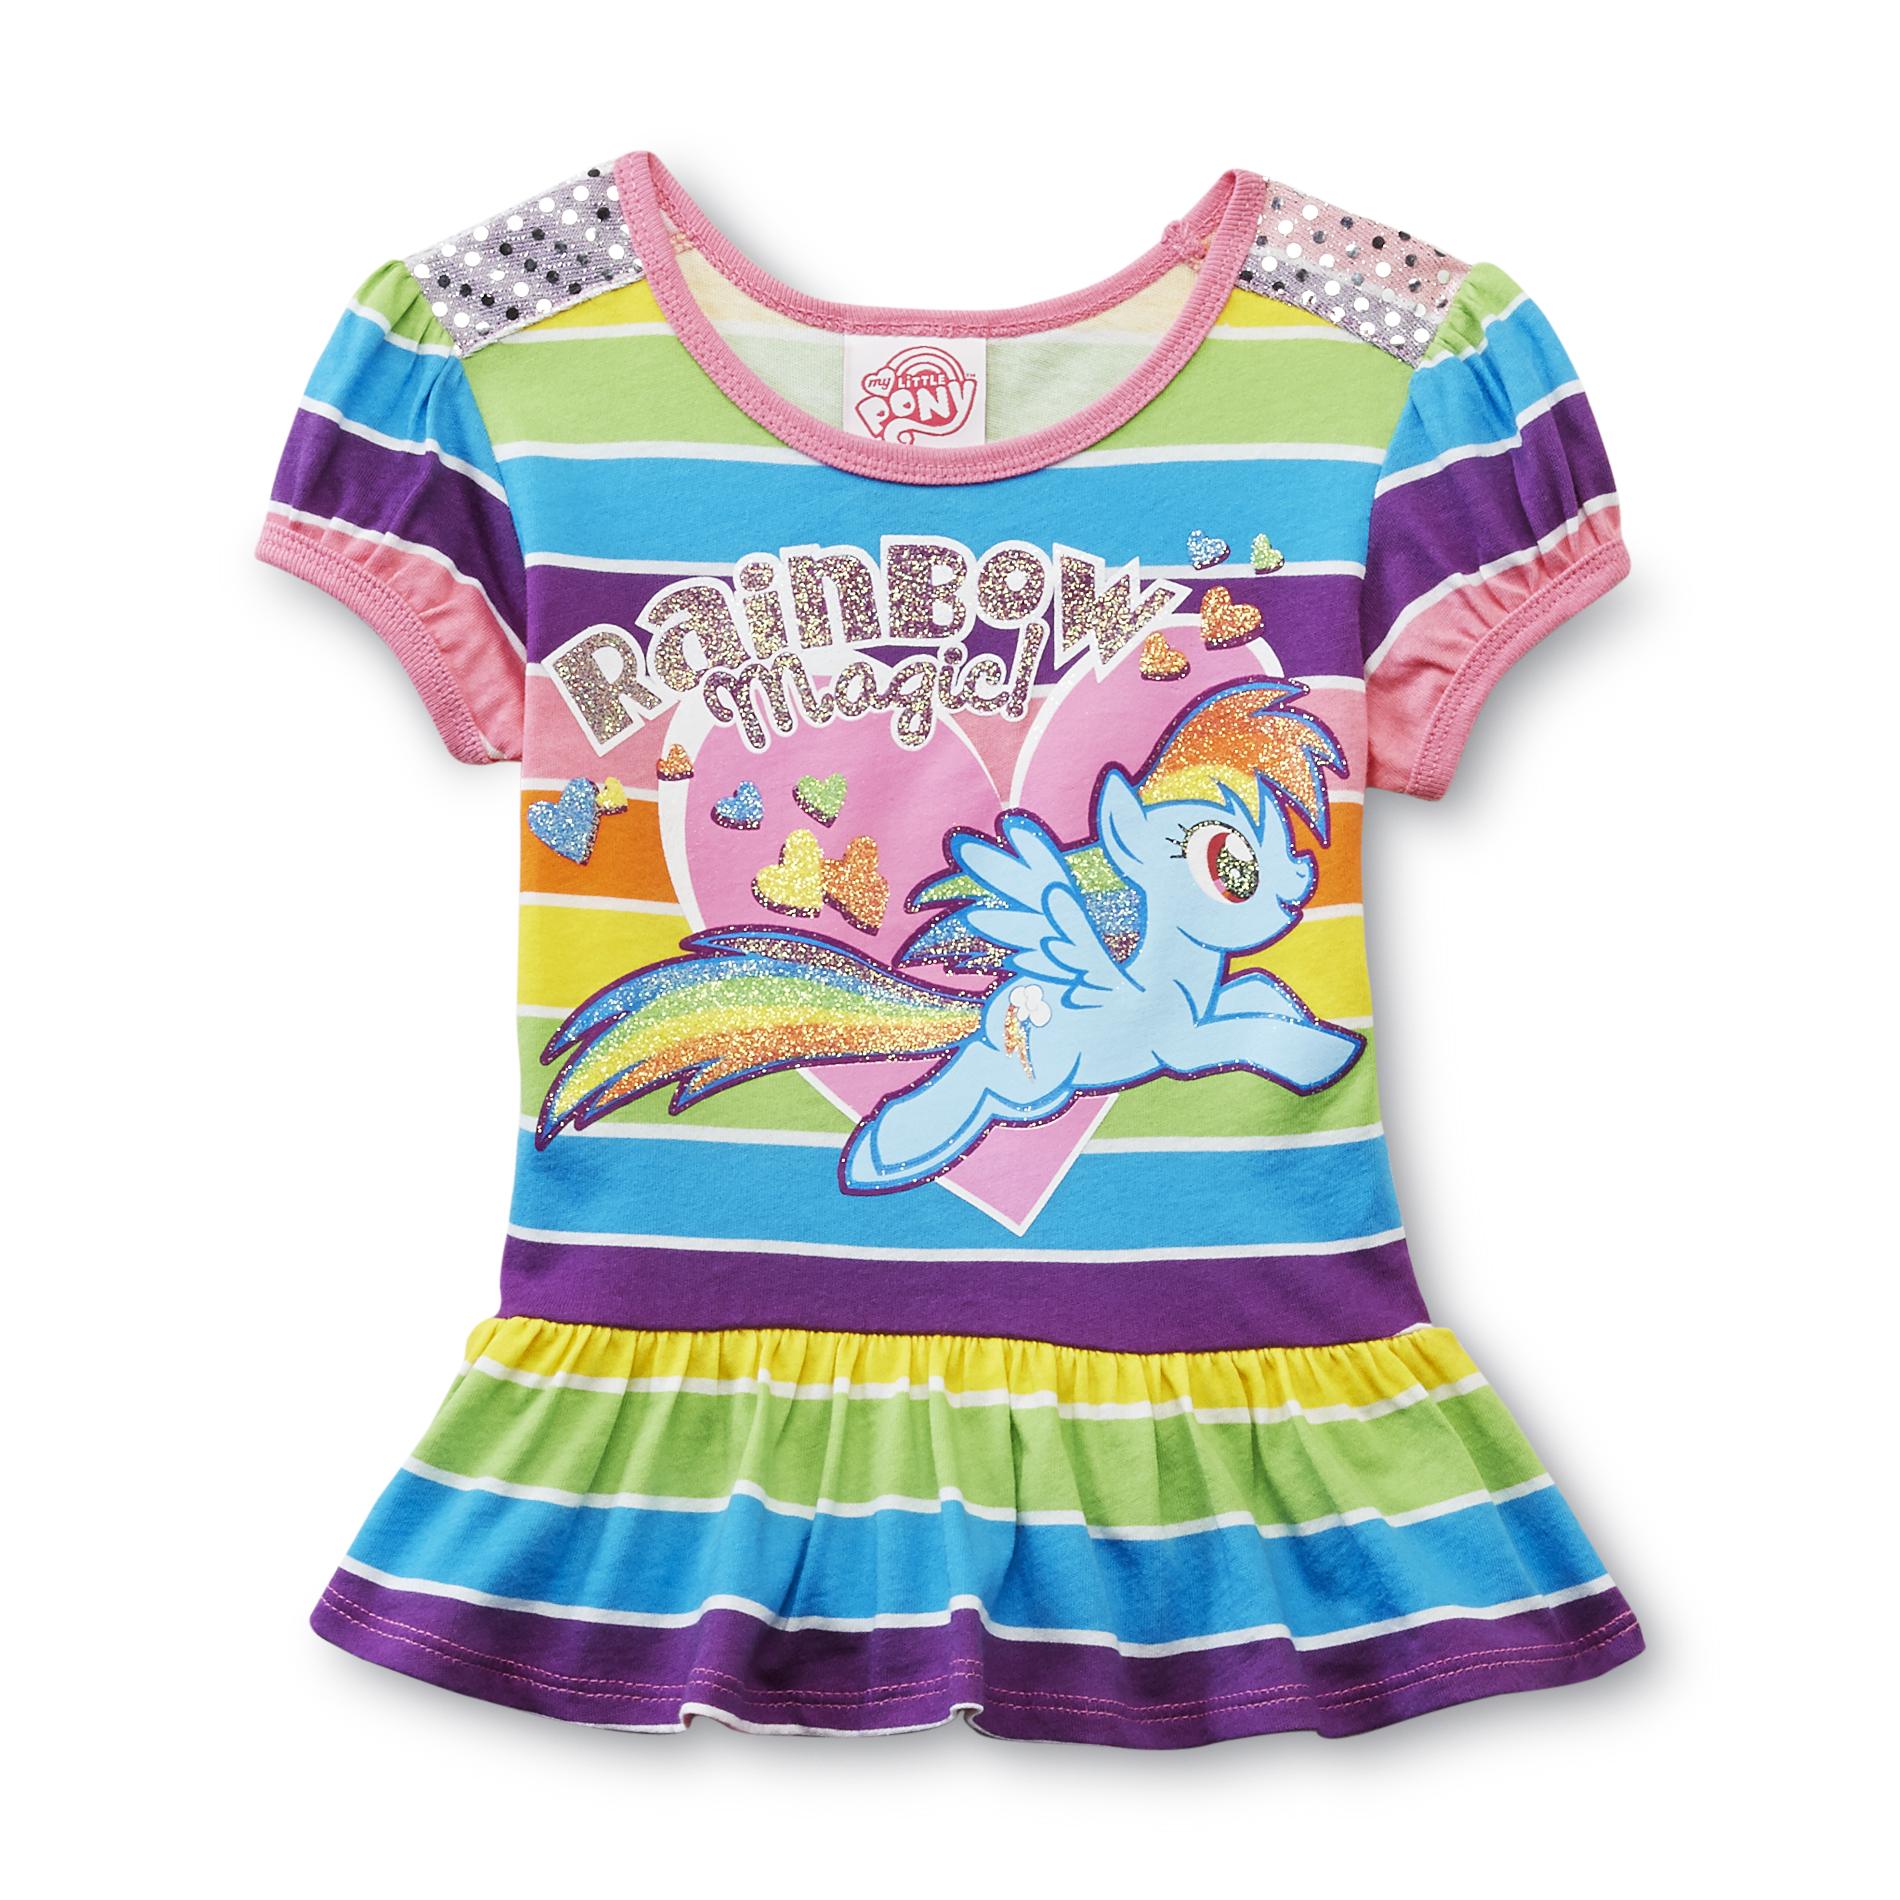 My Little Pony Girl's Embellished Tunic Top - Rainbow Dash